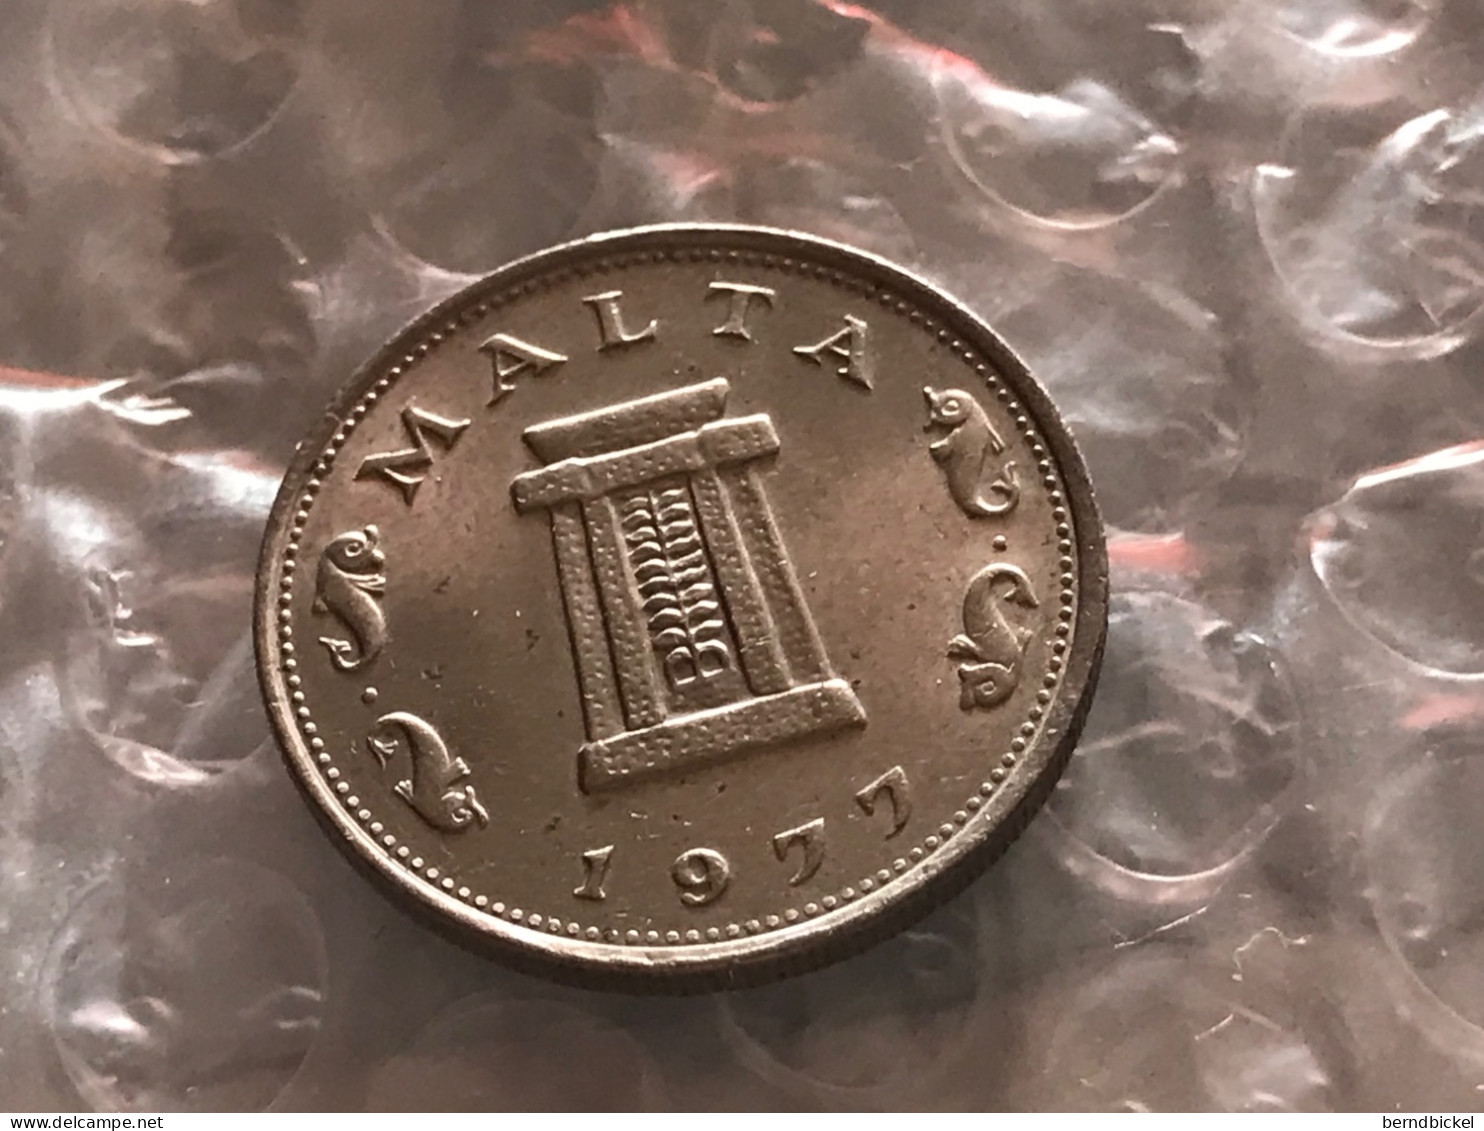 Münze Münzen Umlaufmünze Malta 5 Cents 1977 - Malte